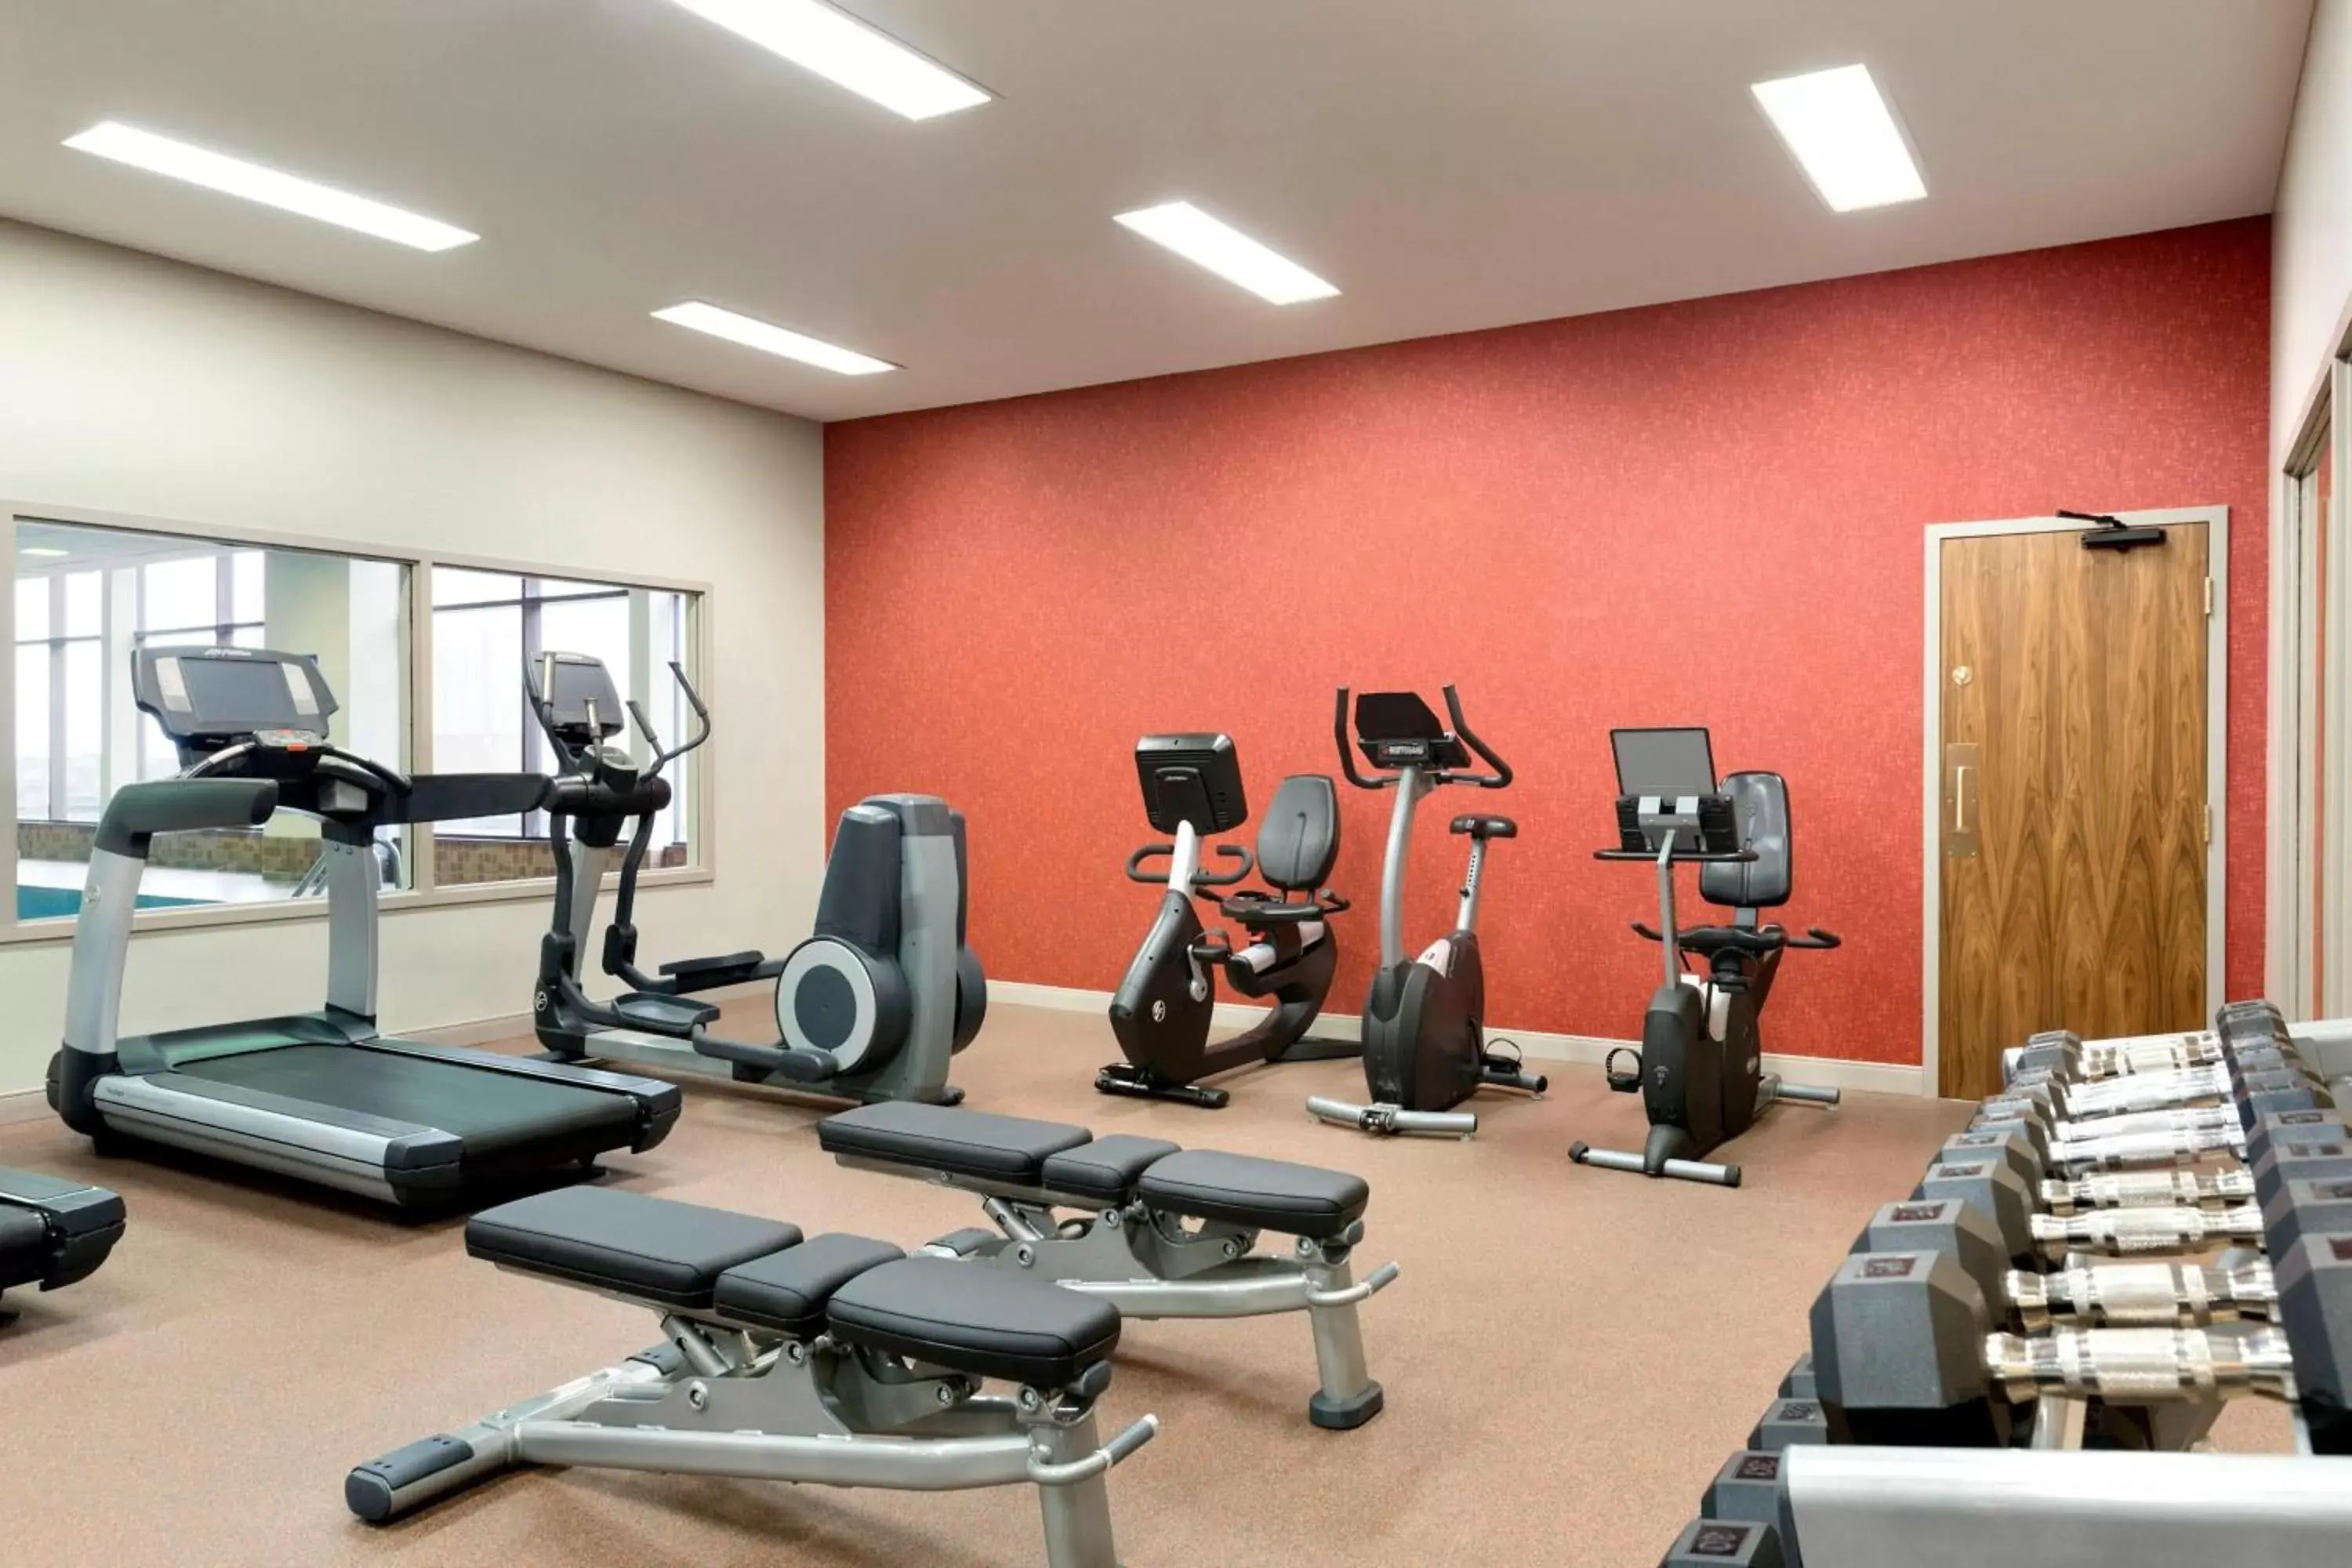 Fitness centre/facilities, Fitness Center/Facilities in Delta Hotels by Marriott Saint John